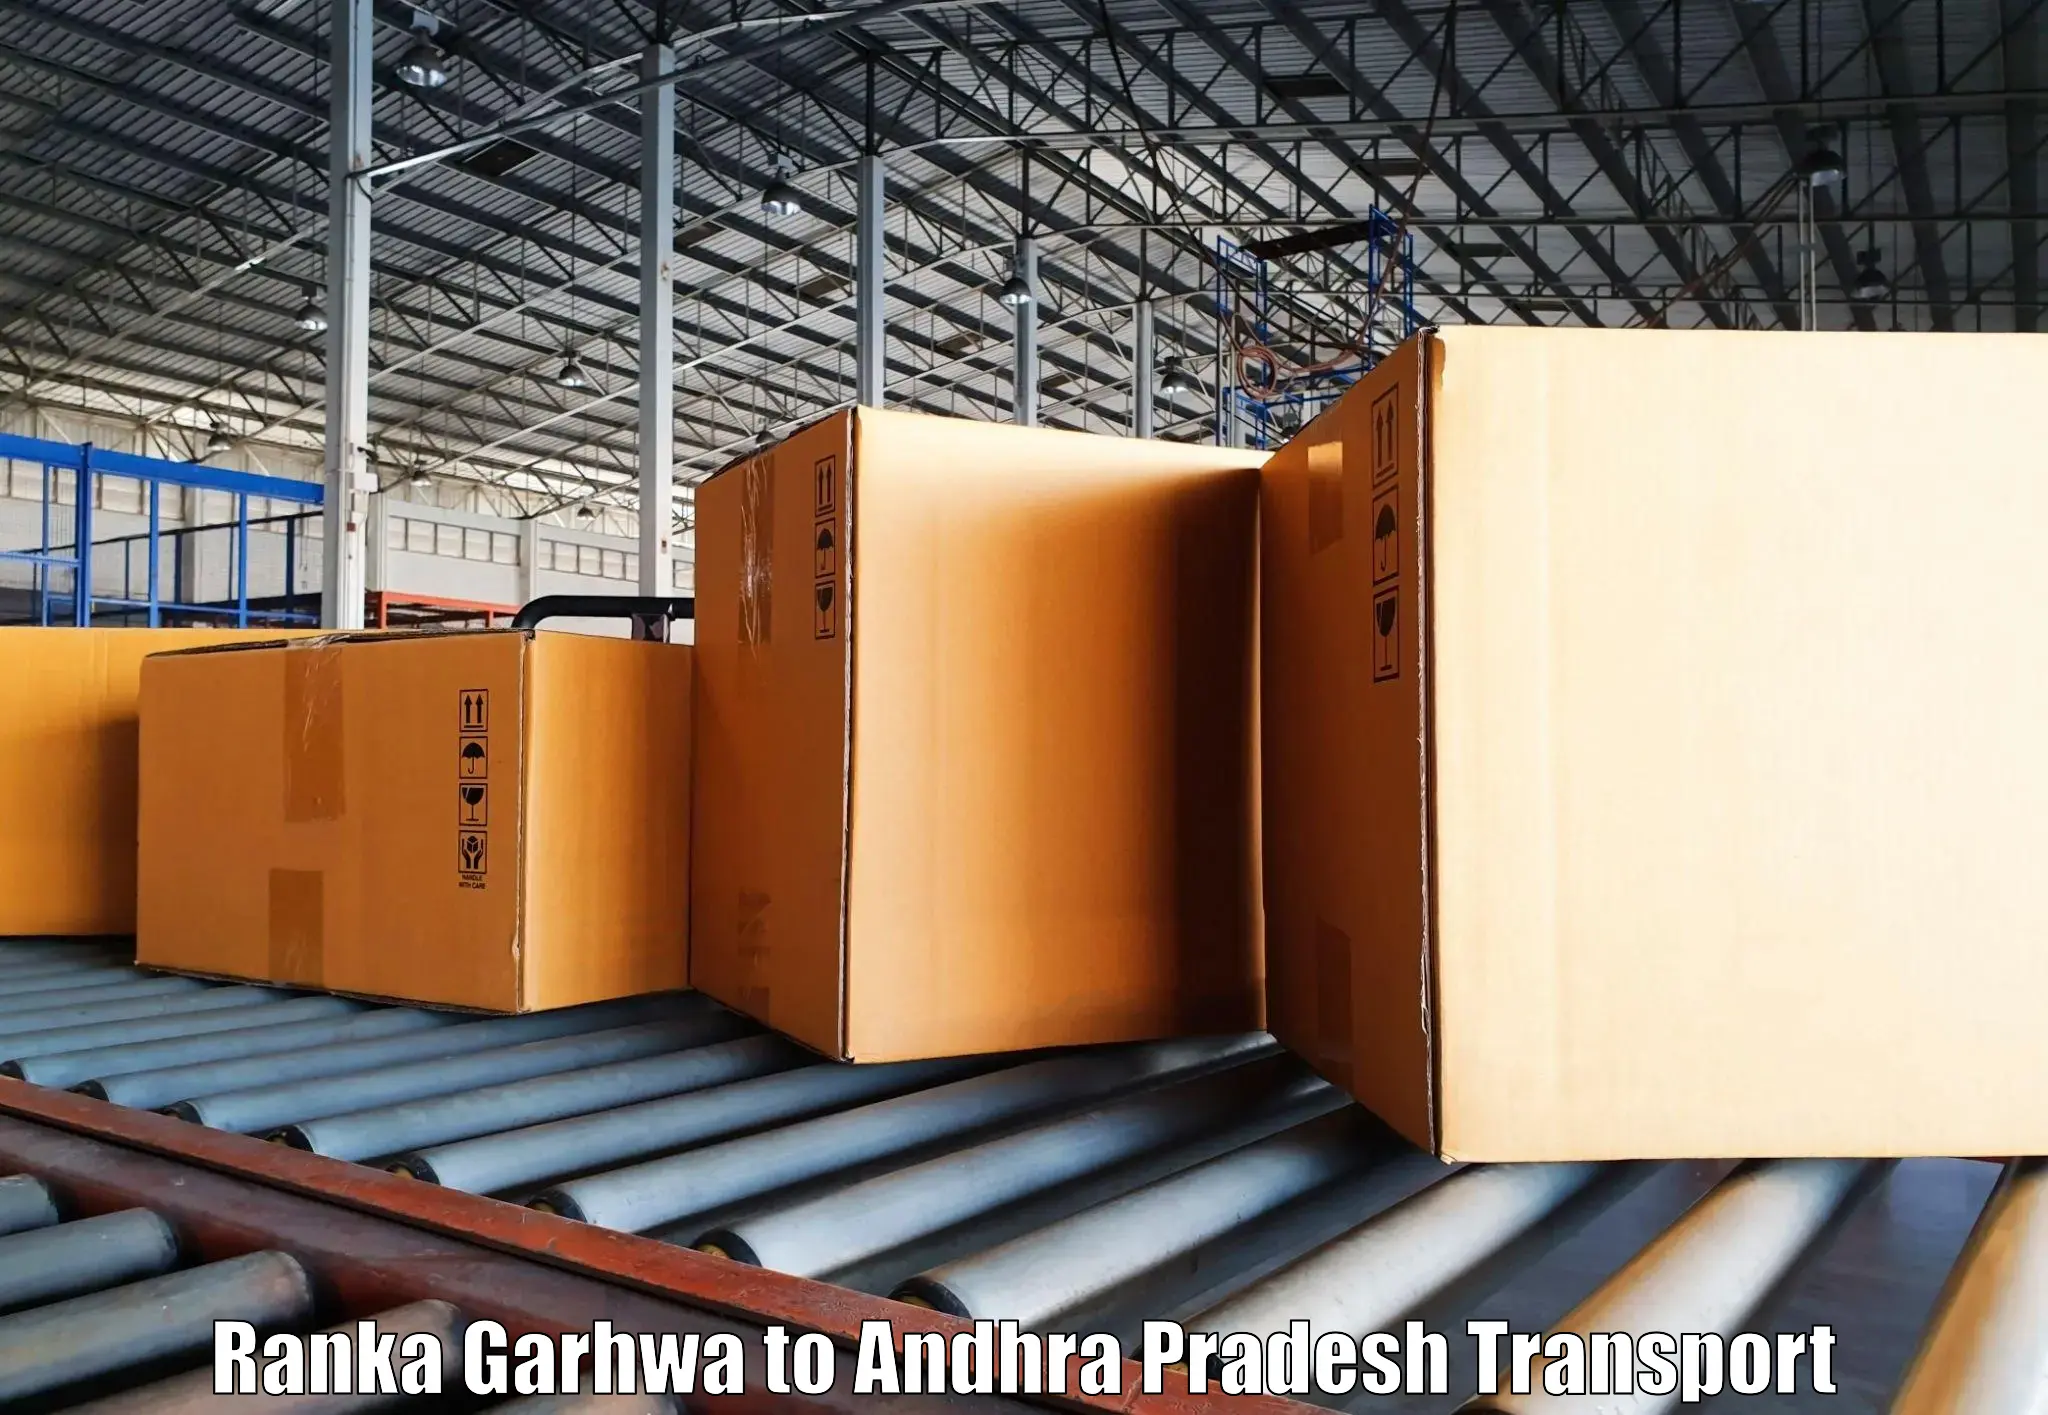 Shipping services Ranka Garhwa to Kakinada